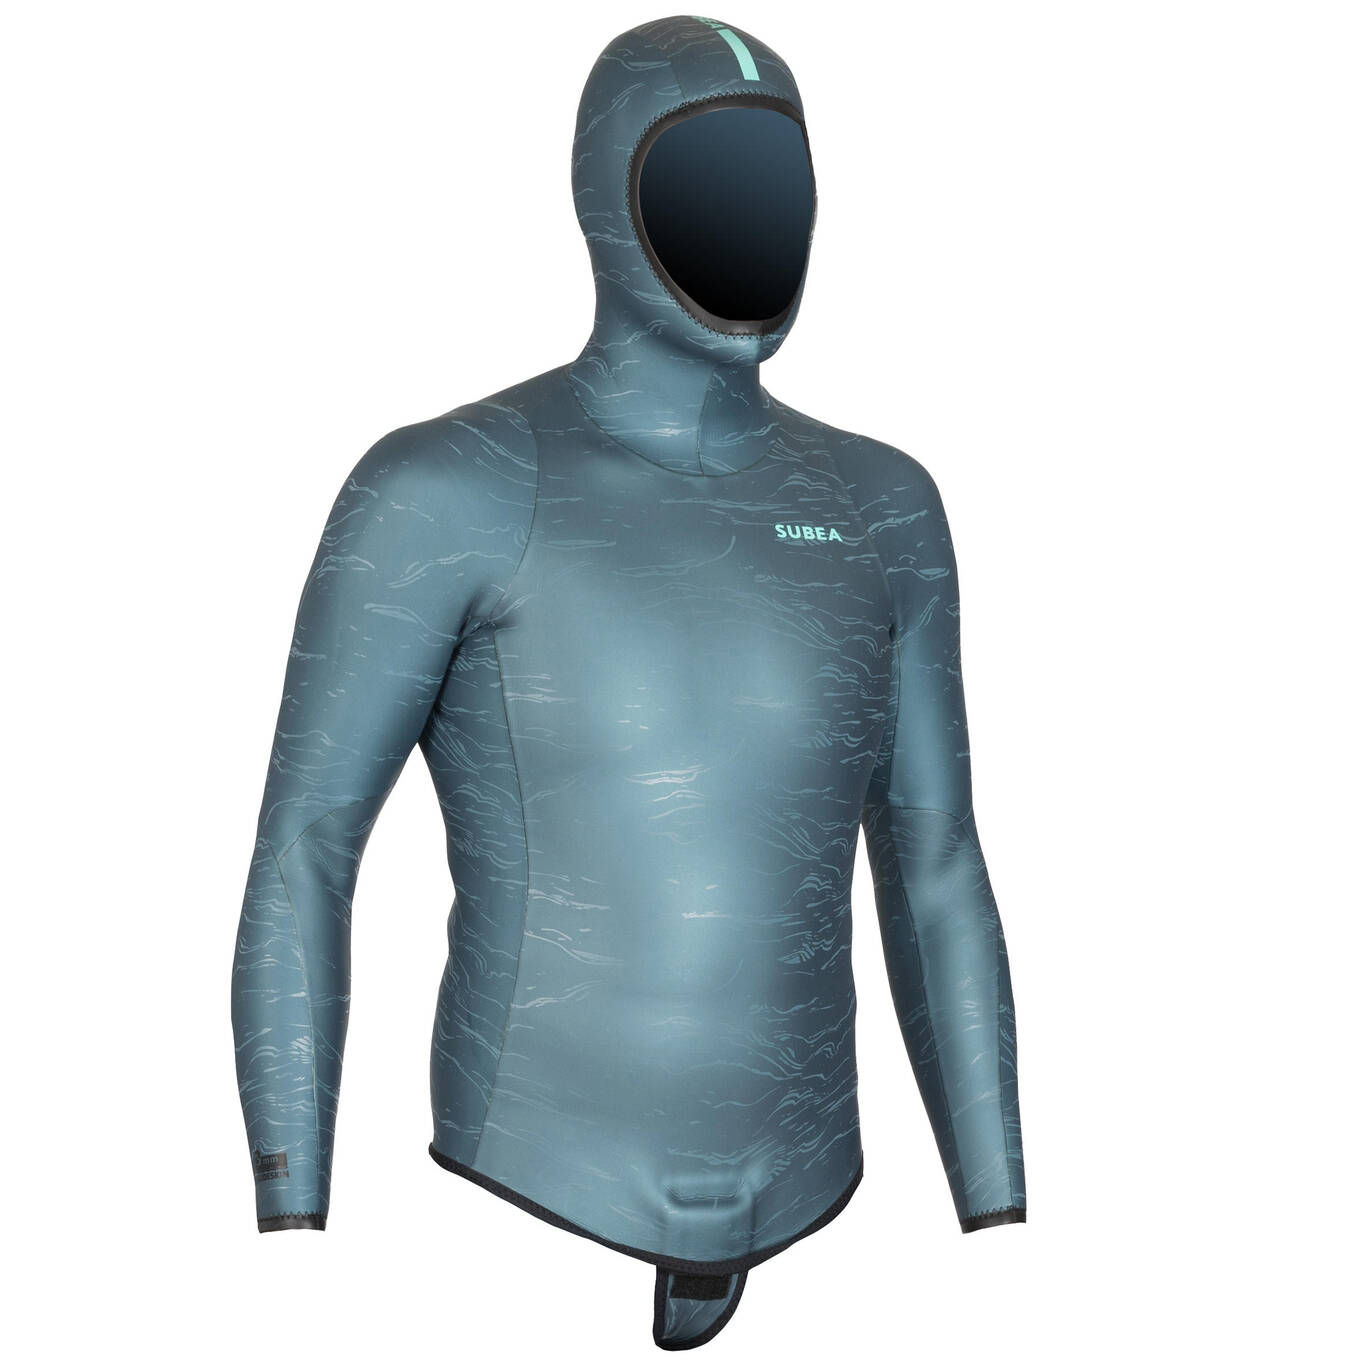 Neoprene freediving wetsuit jacket FRD900 3 mm - grey print